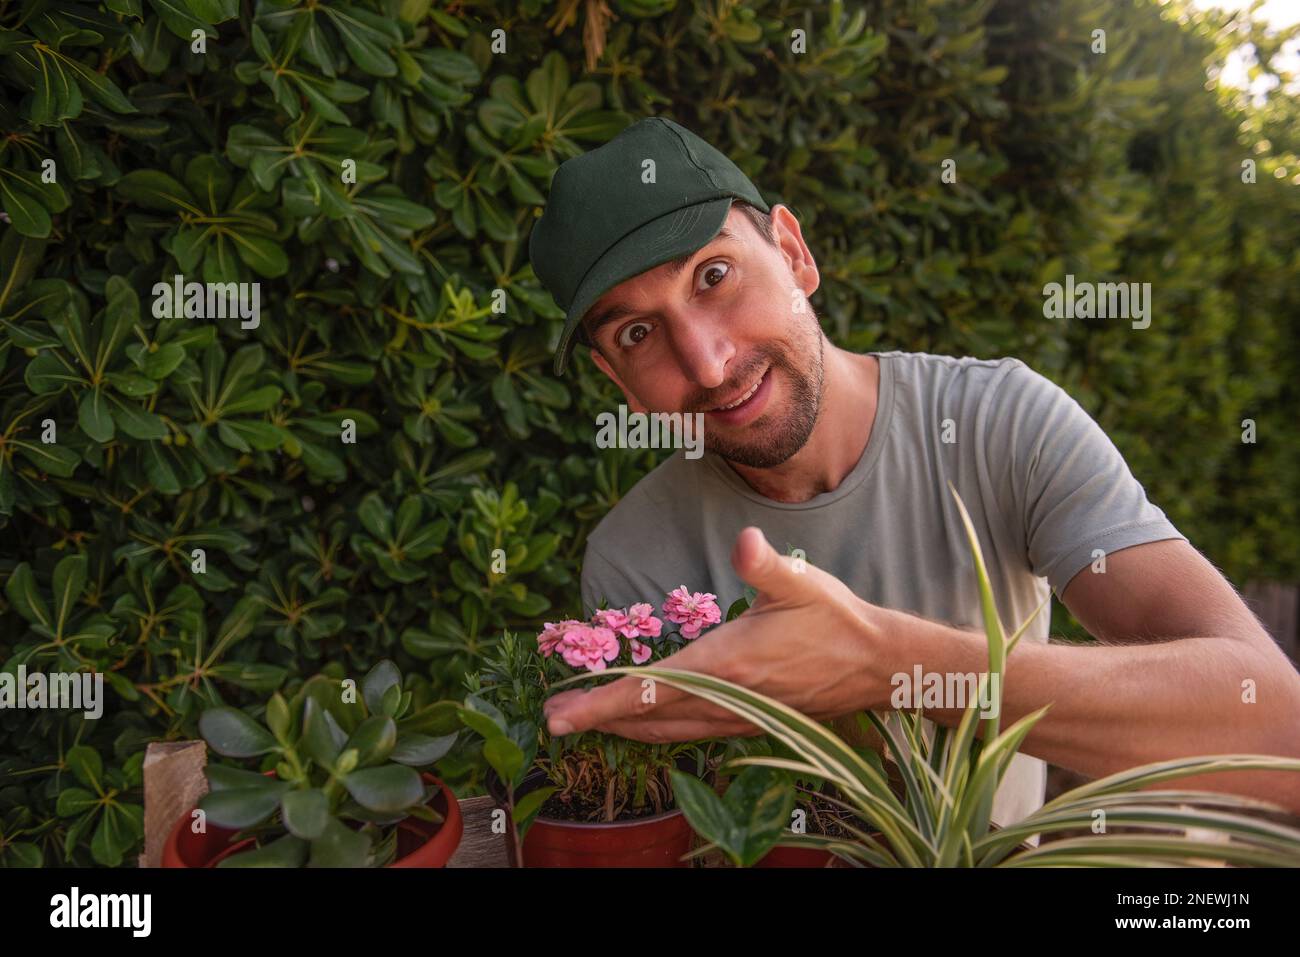 Ein Gärtner mit grüner Mütze lächelt, während er vor dem lebenden immergrünen Zaun Phillyrea latifolia Zimmerpflanzen riecht. Blütenallergie. Natururlaub g Stockfoto